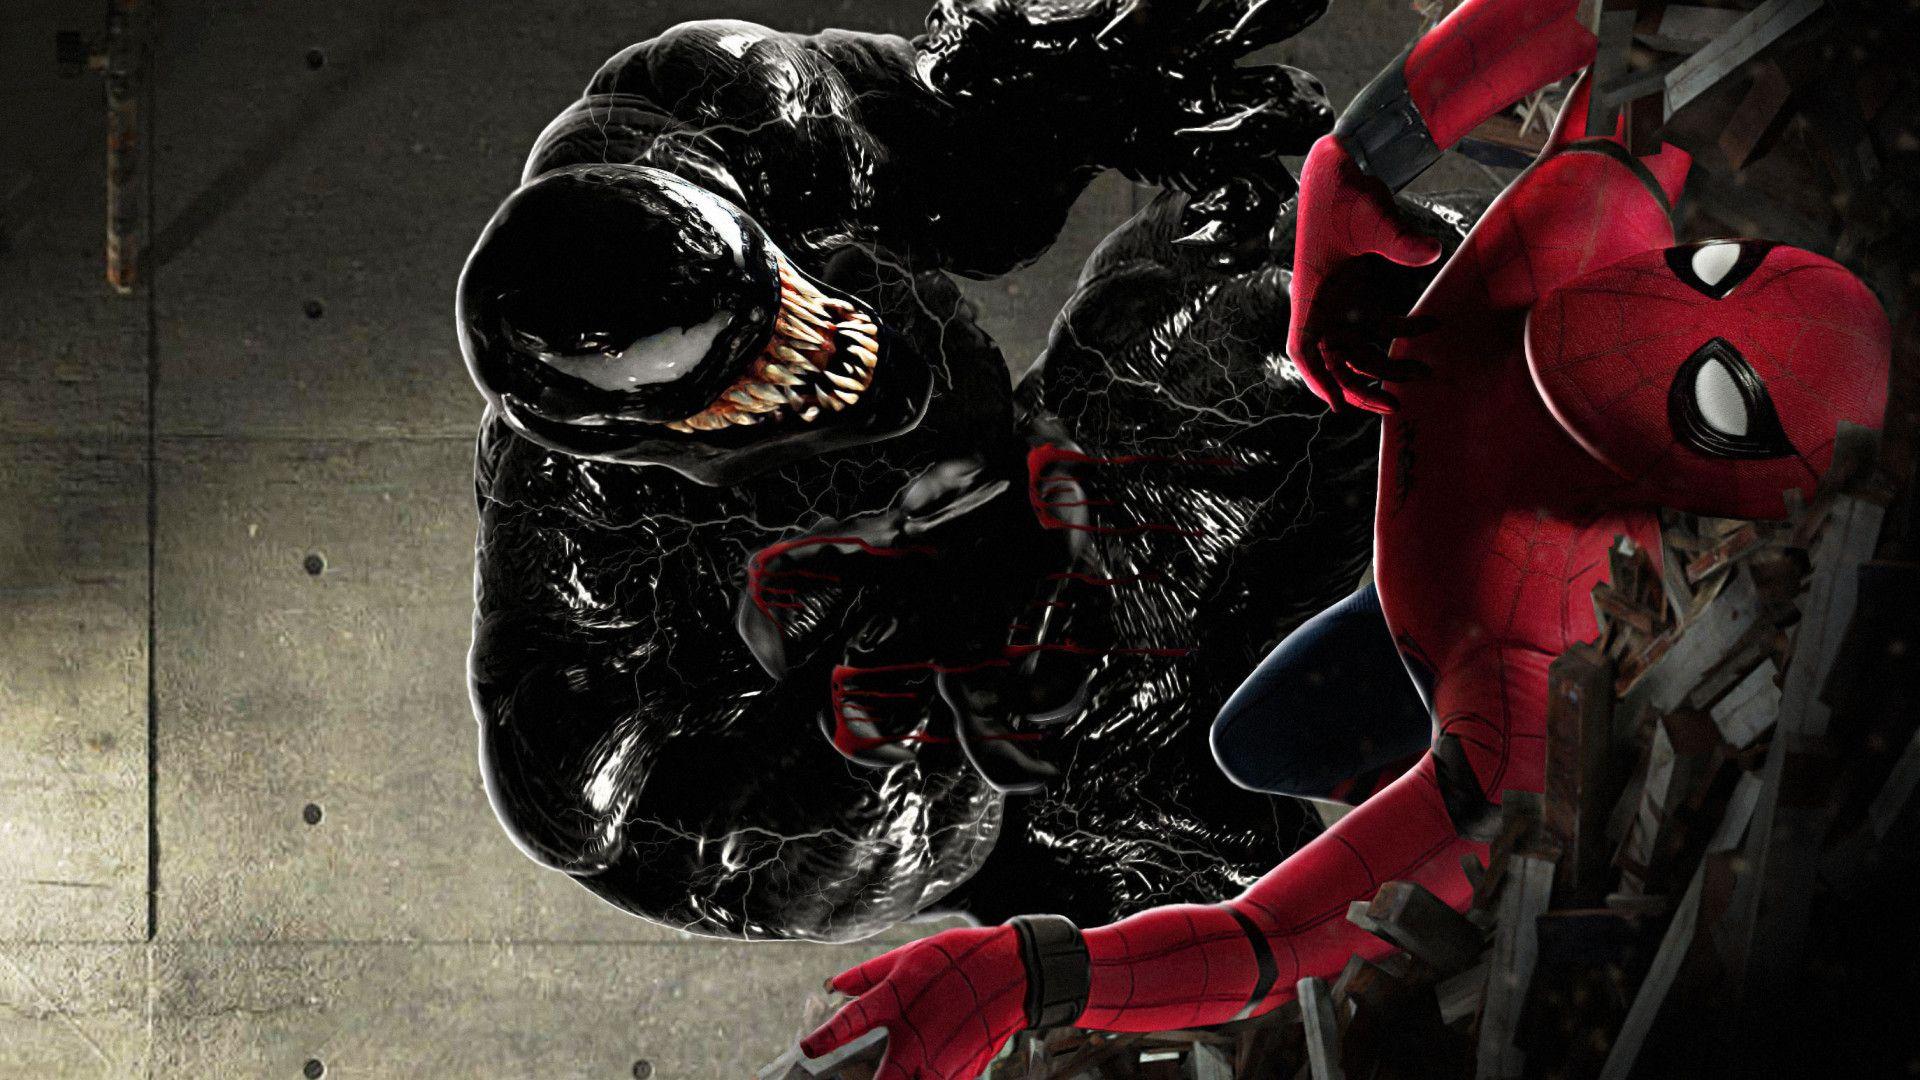 SpiderMan Vs Venom Wallpapers Top Free SpiderMan Vs Venom